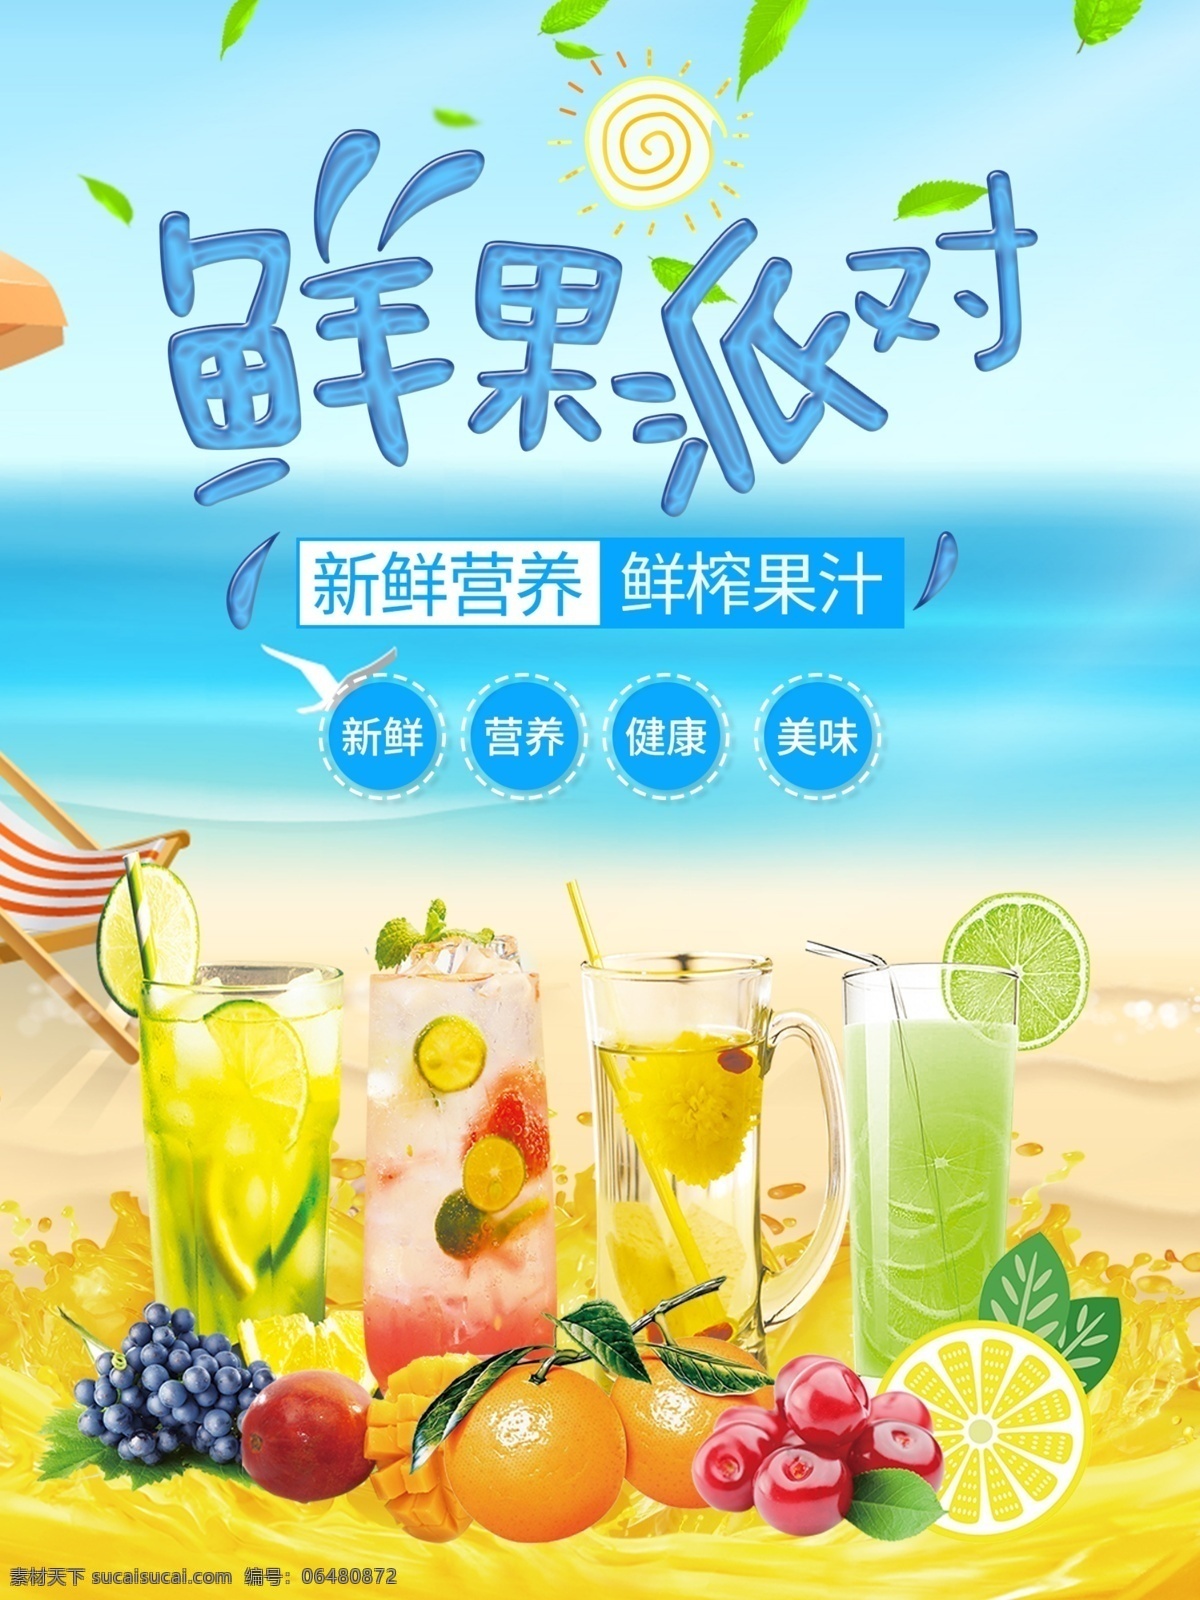 夏季 清凉 果汁 海报 水果 清凉一夏